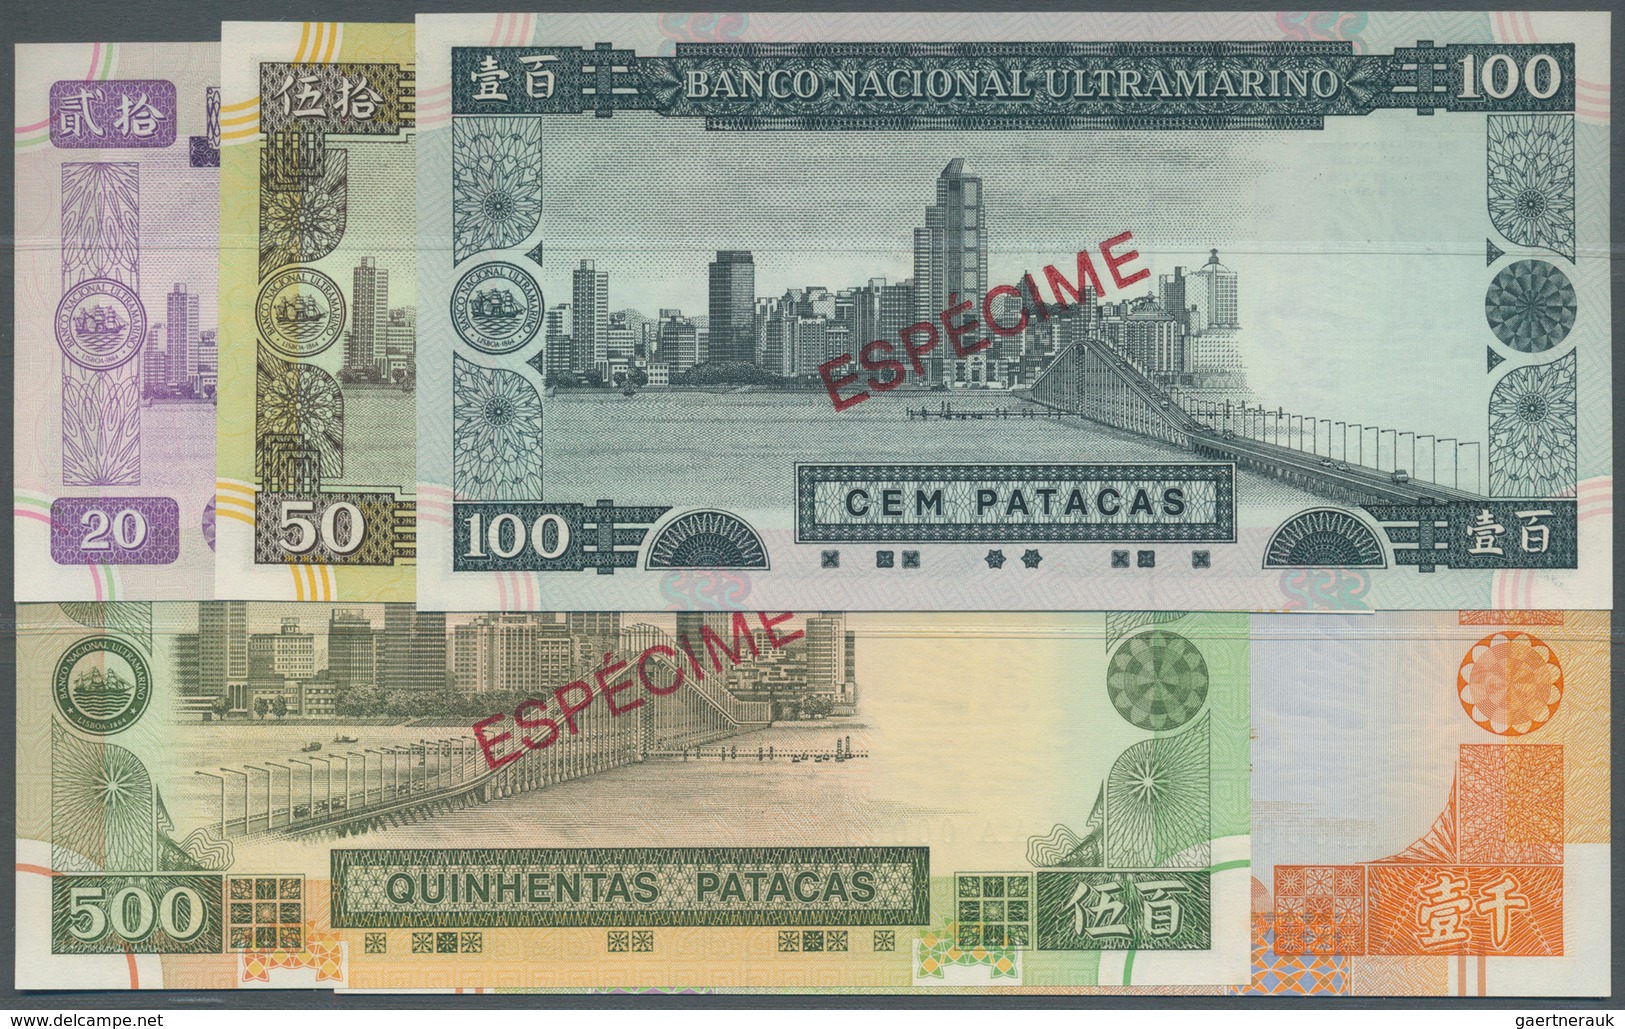 01958 Macau / Macao: Banco Nacional Ultramarino, Highly Rare Specimen Set Of The December 20th 1999 Series - Macao